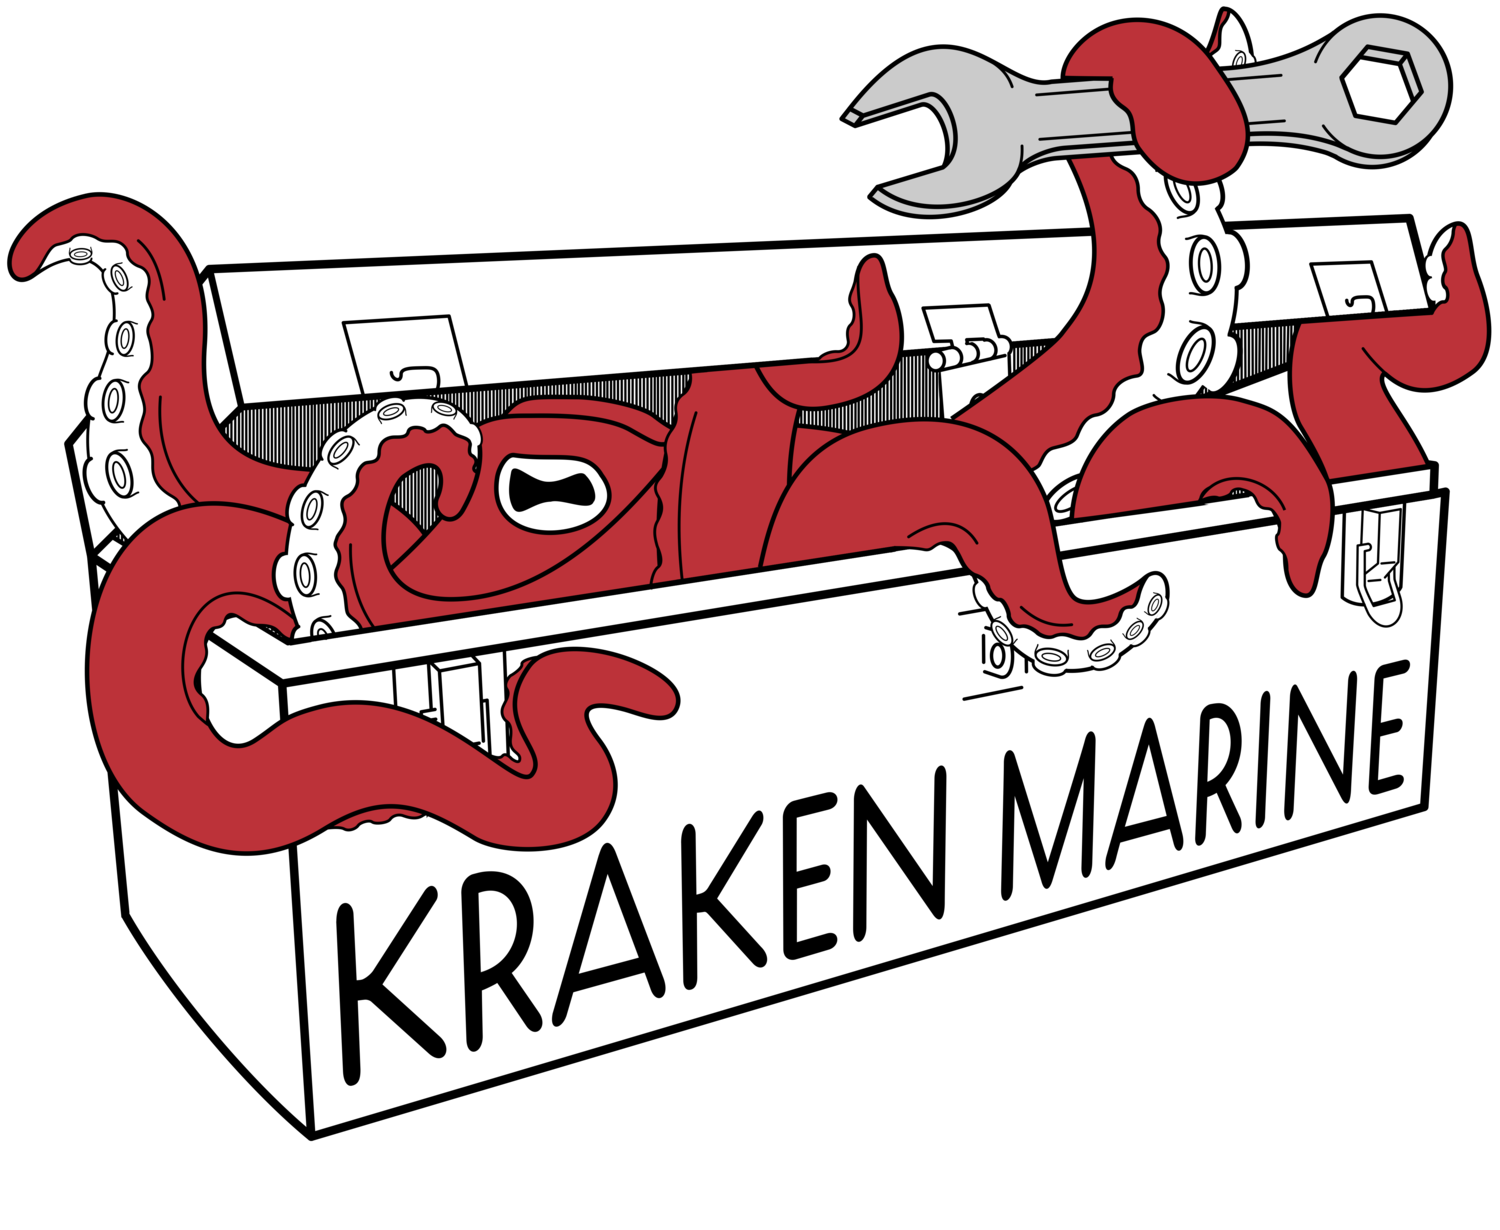 Kraken Marine Services